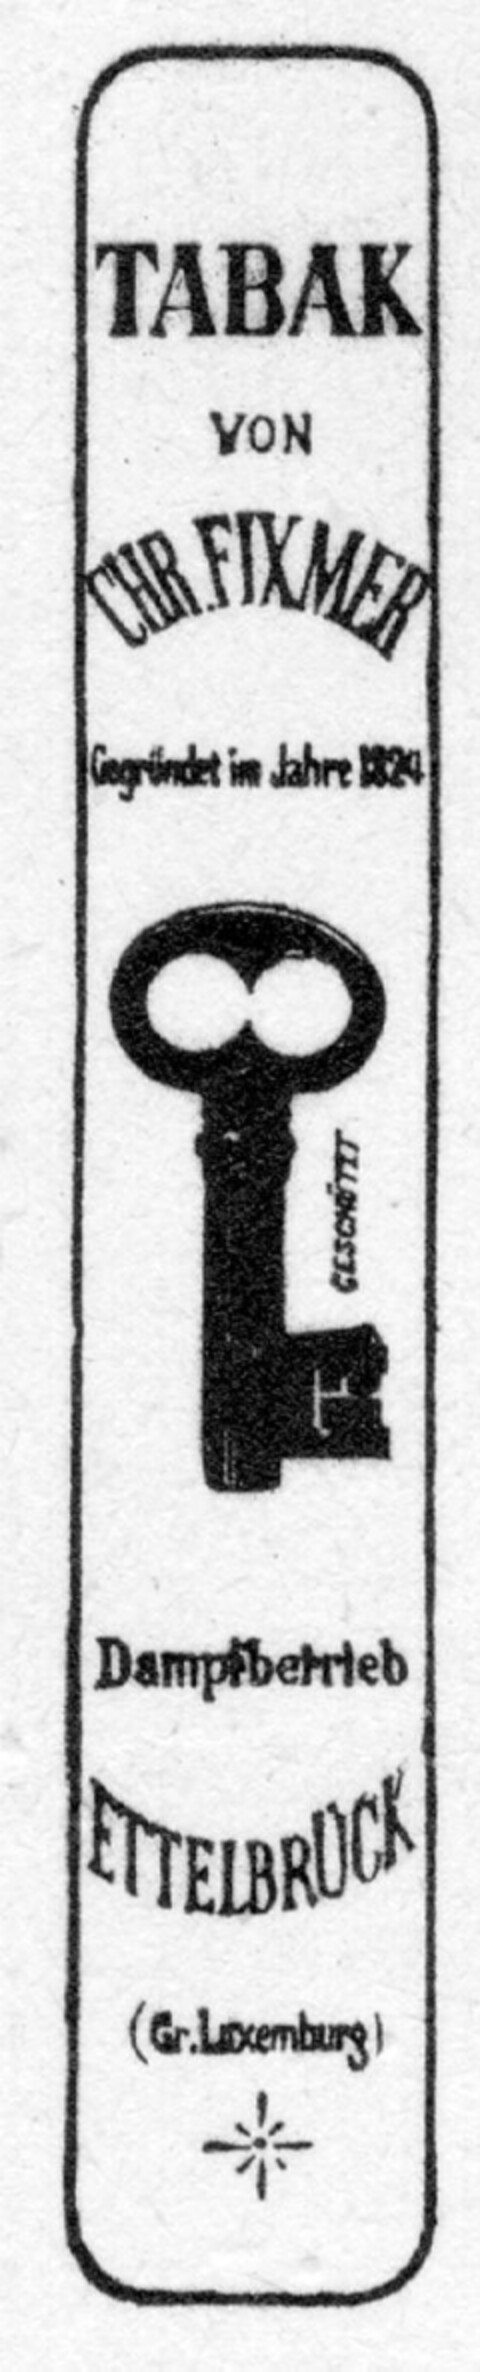 TABAK VON CHR. FIXMER Logo (DPMA, 01.11.1894)